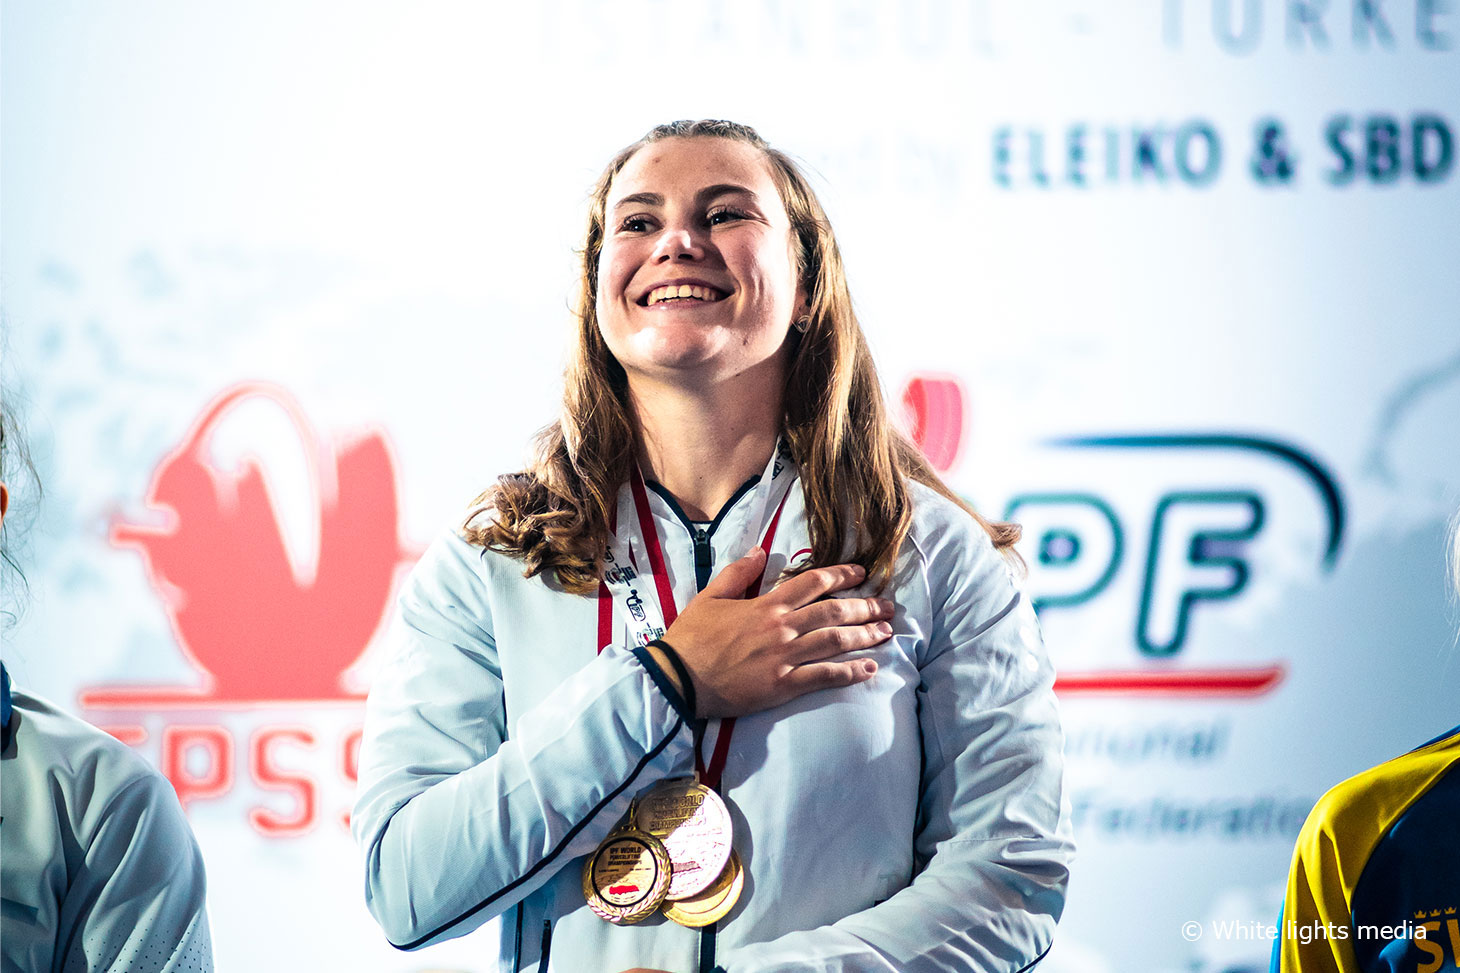 La médaille d’or de Clara Peyraud aux championnats du monde juniors de force athlétique à Istanbul © White lights media